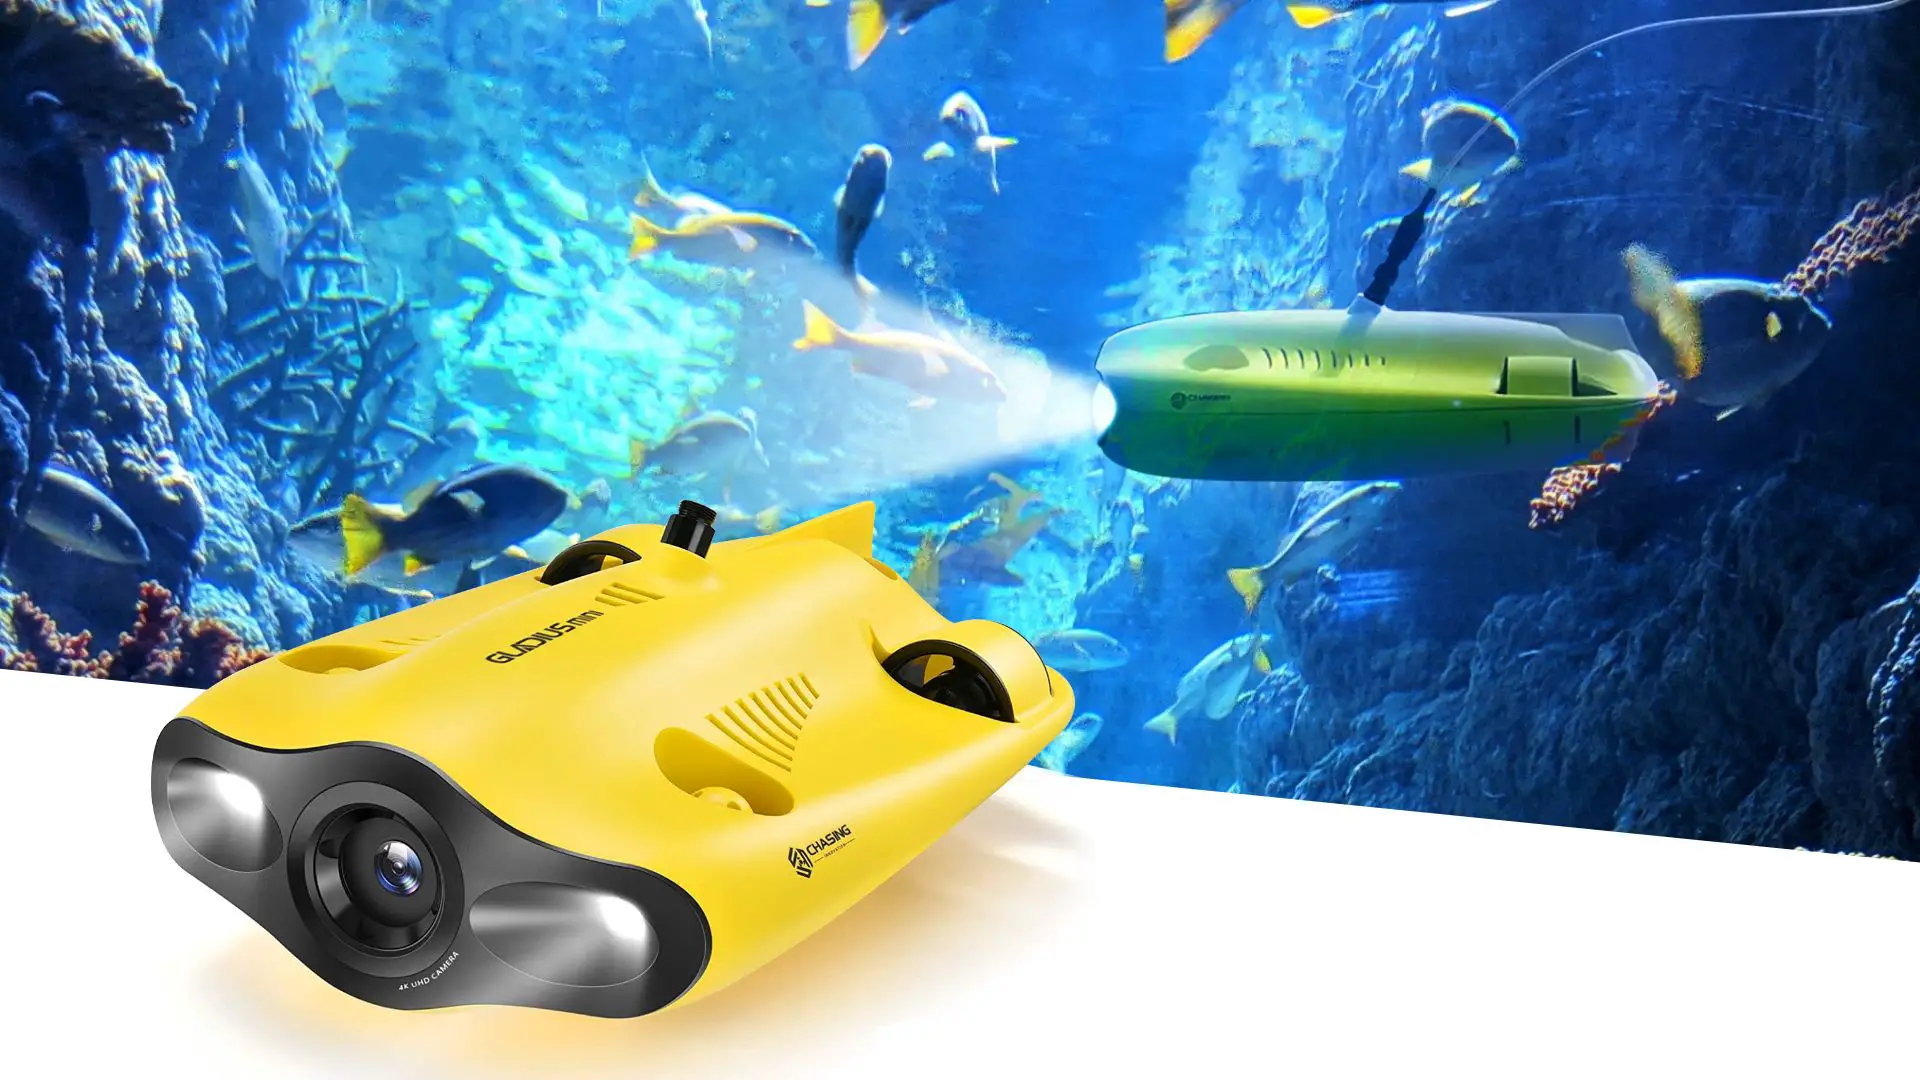 7.gladius Mini Underwater Drone